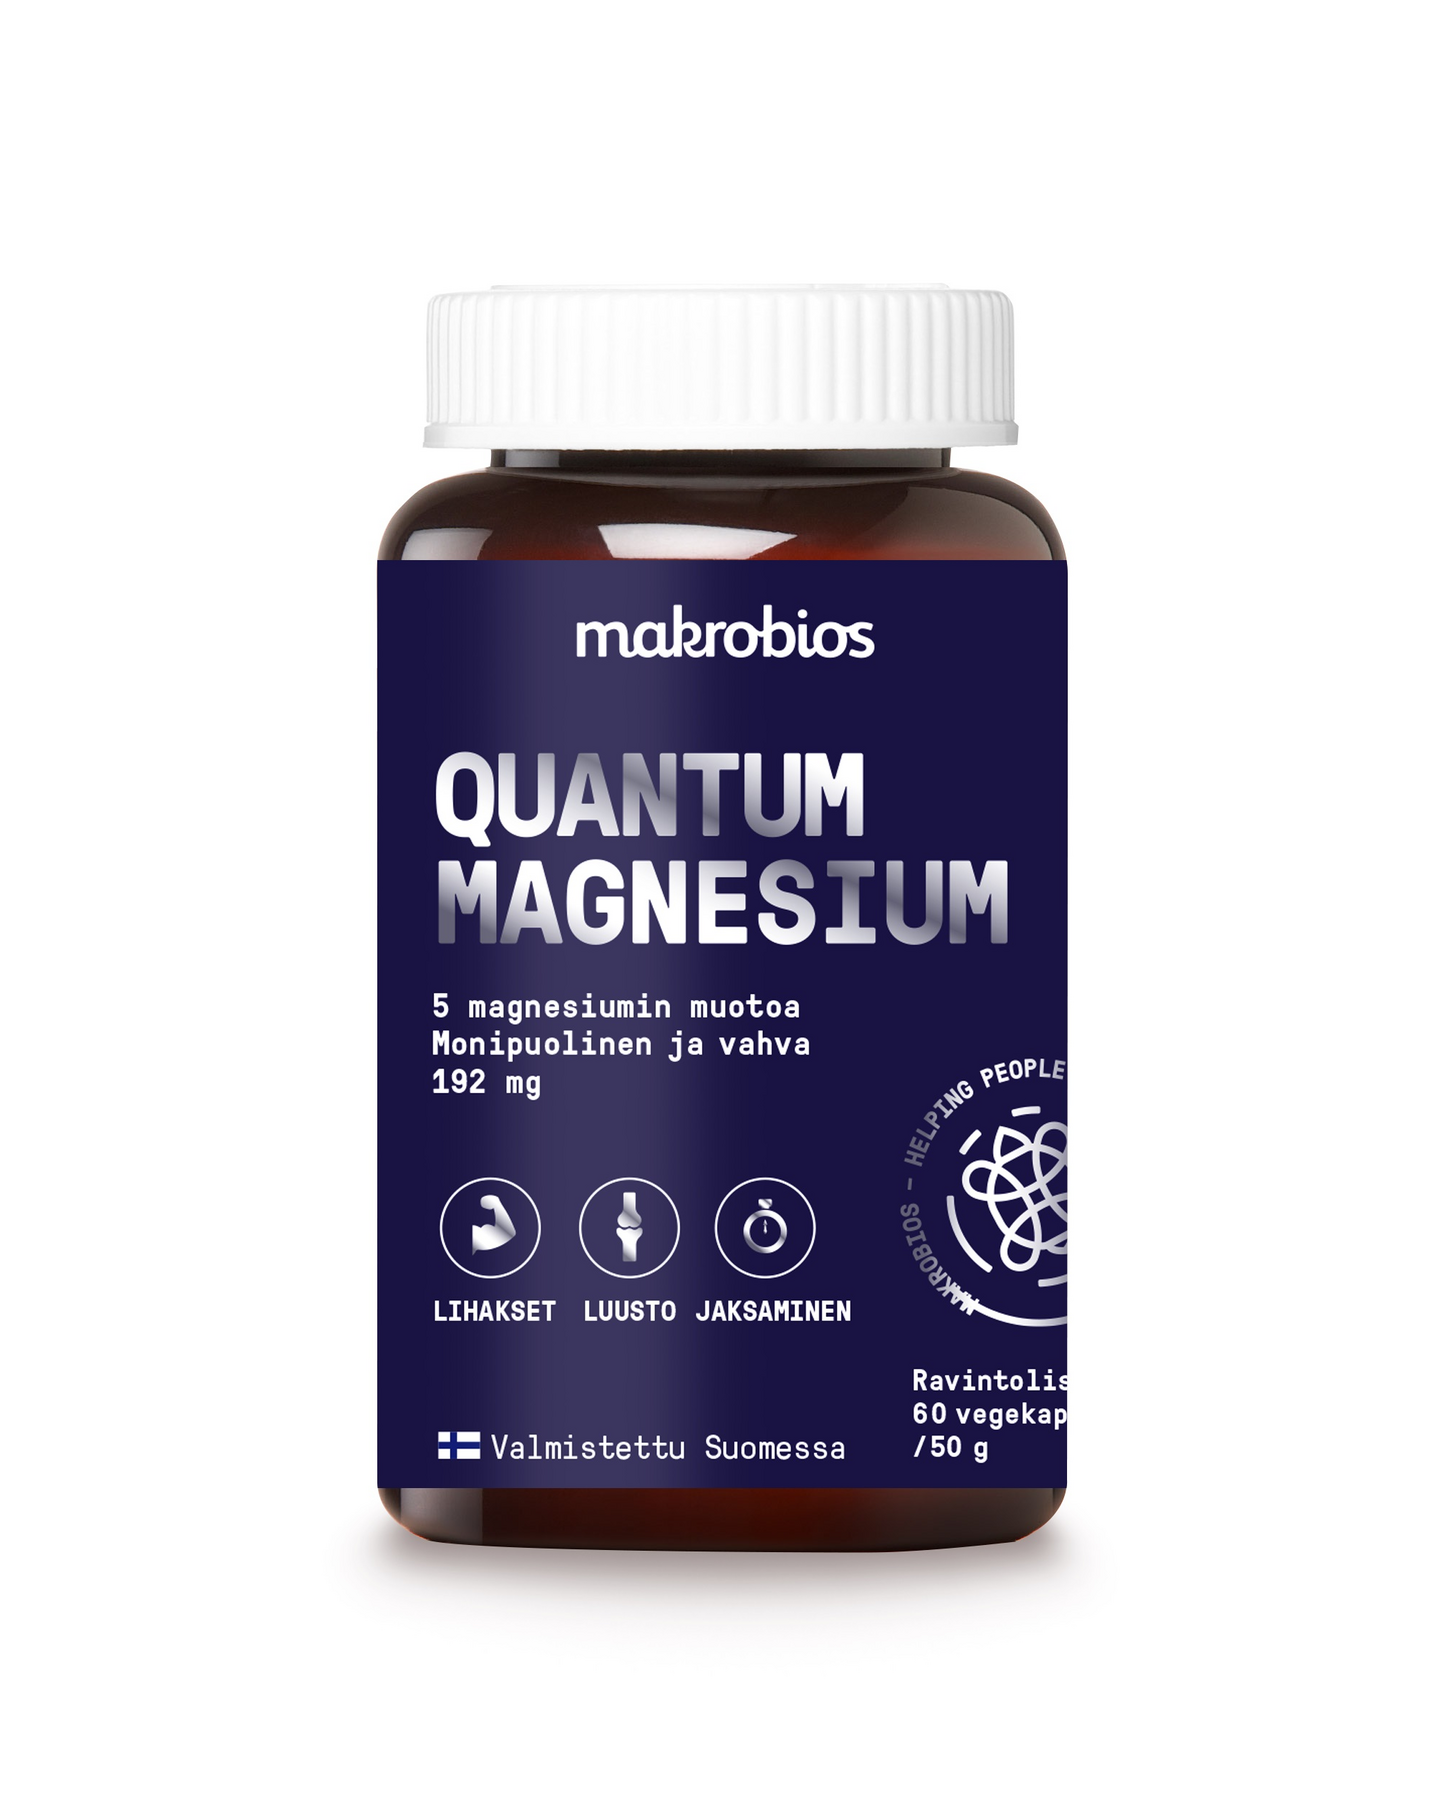 Makrobios Quantum Magnesium 60 vegekaps.  50g